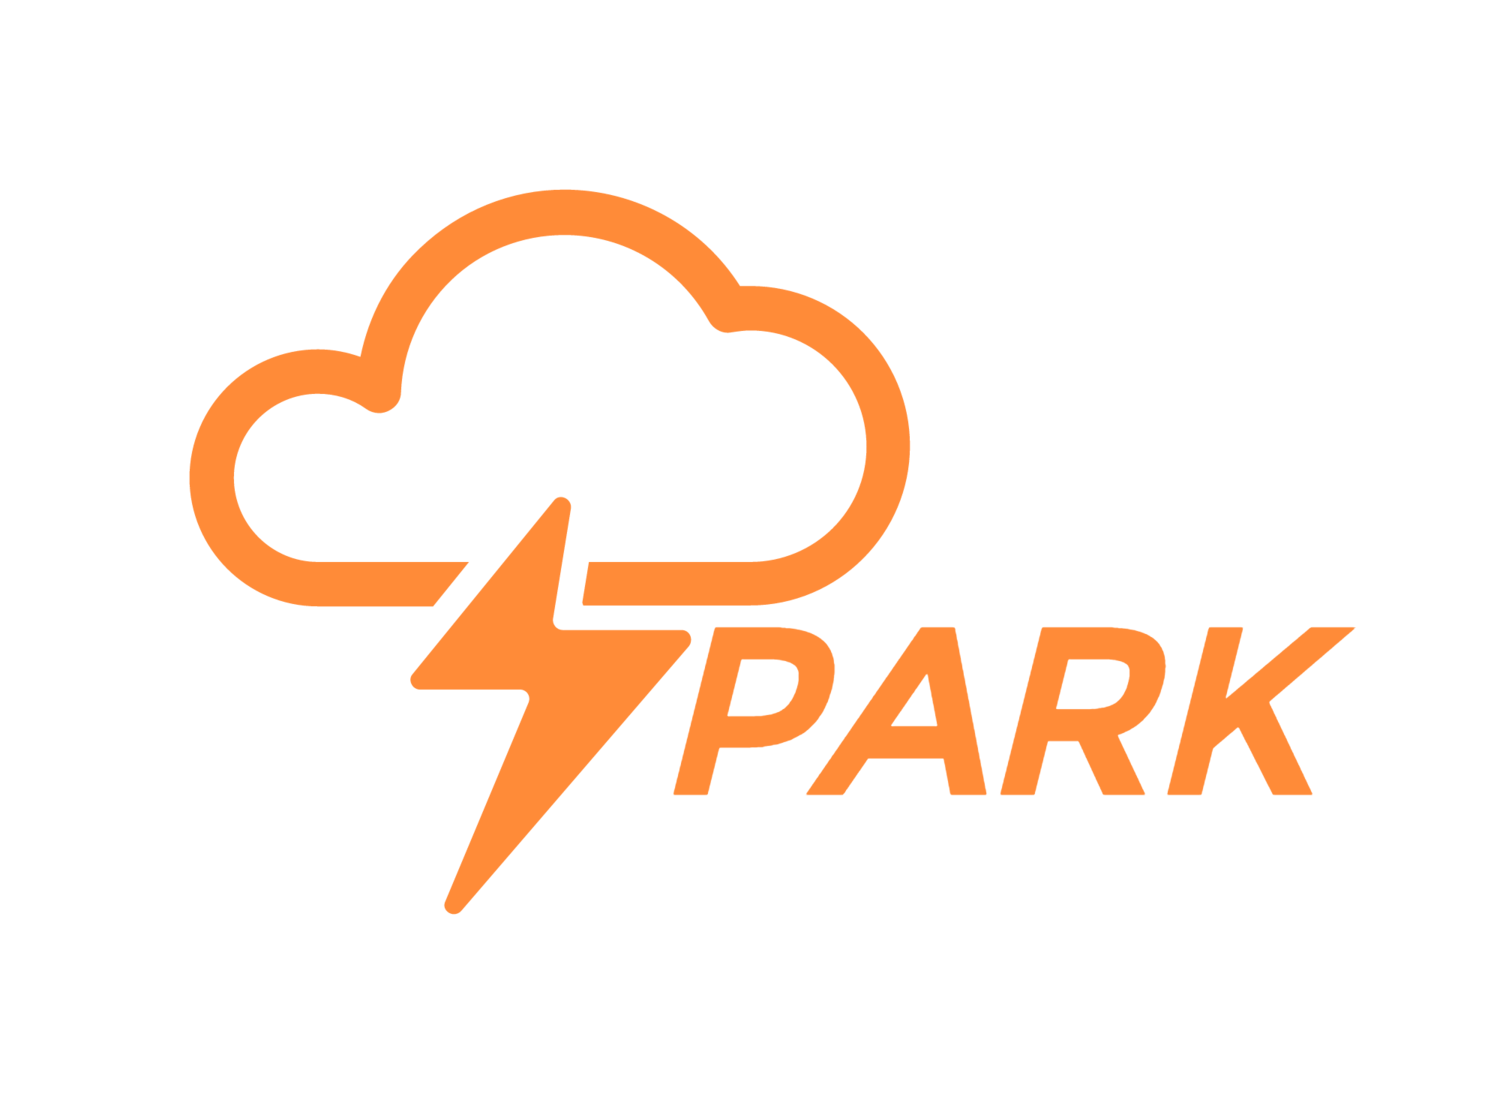 Menlo Spark